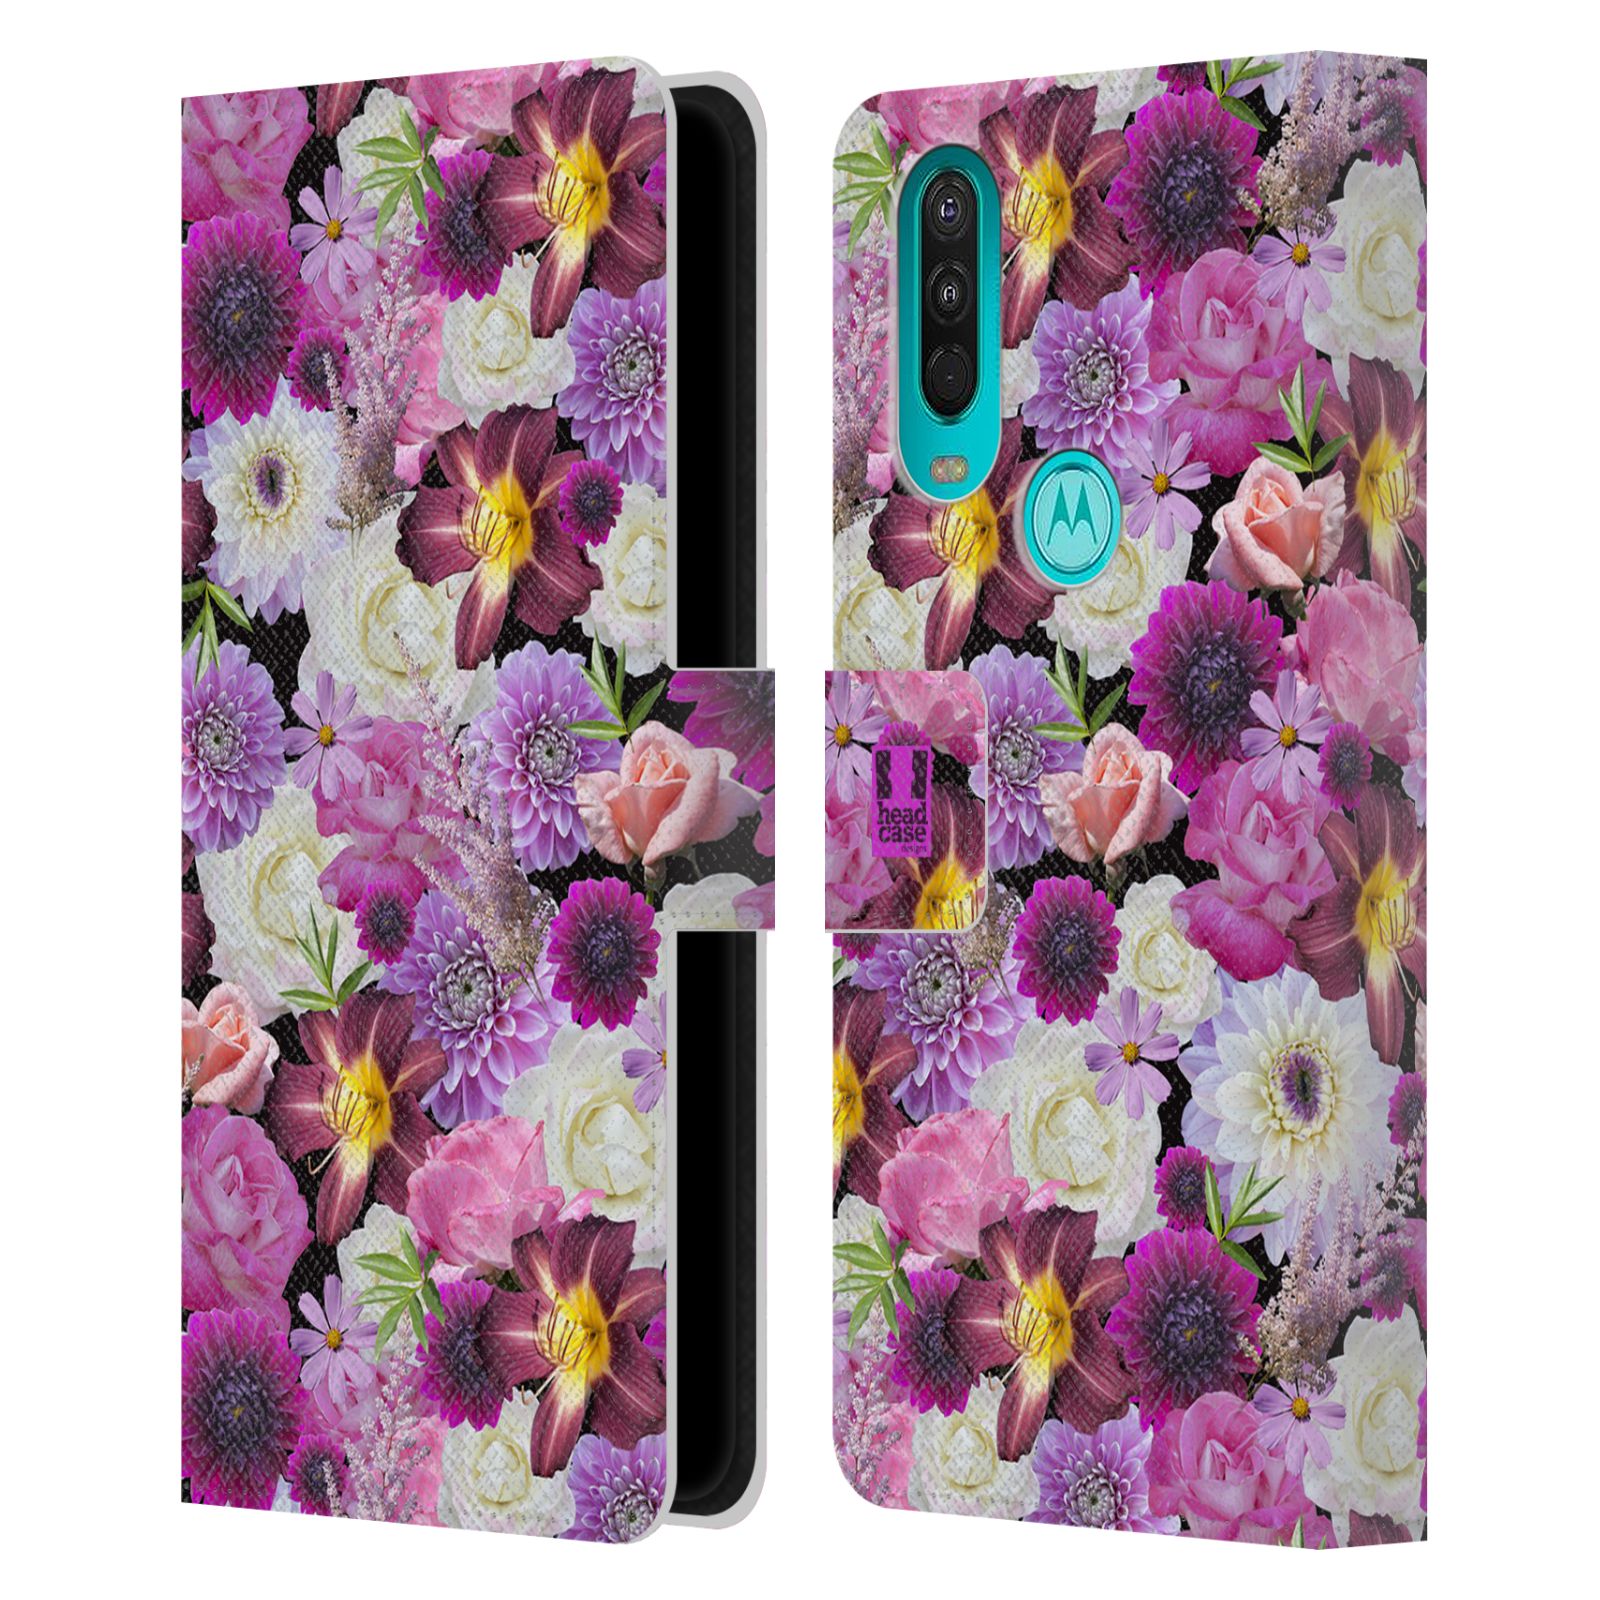 Pouzdro HEAD CASE na mobil Motorola One Action květy foto fialová a bílá